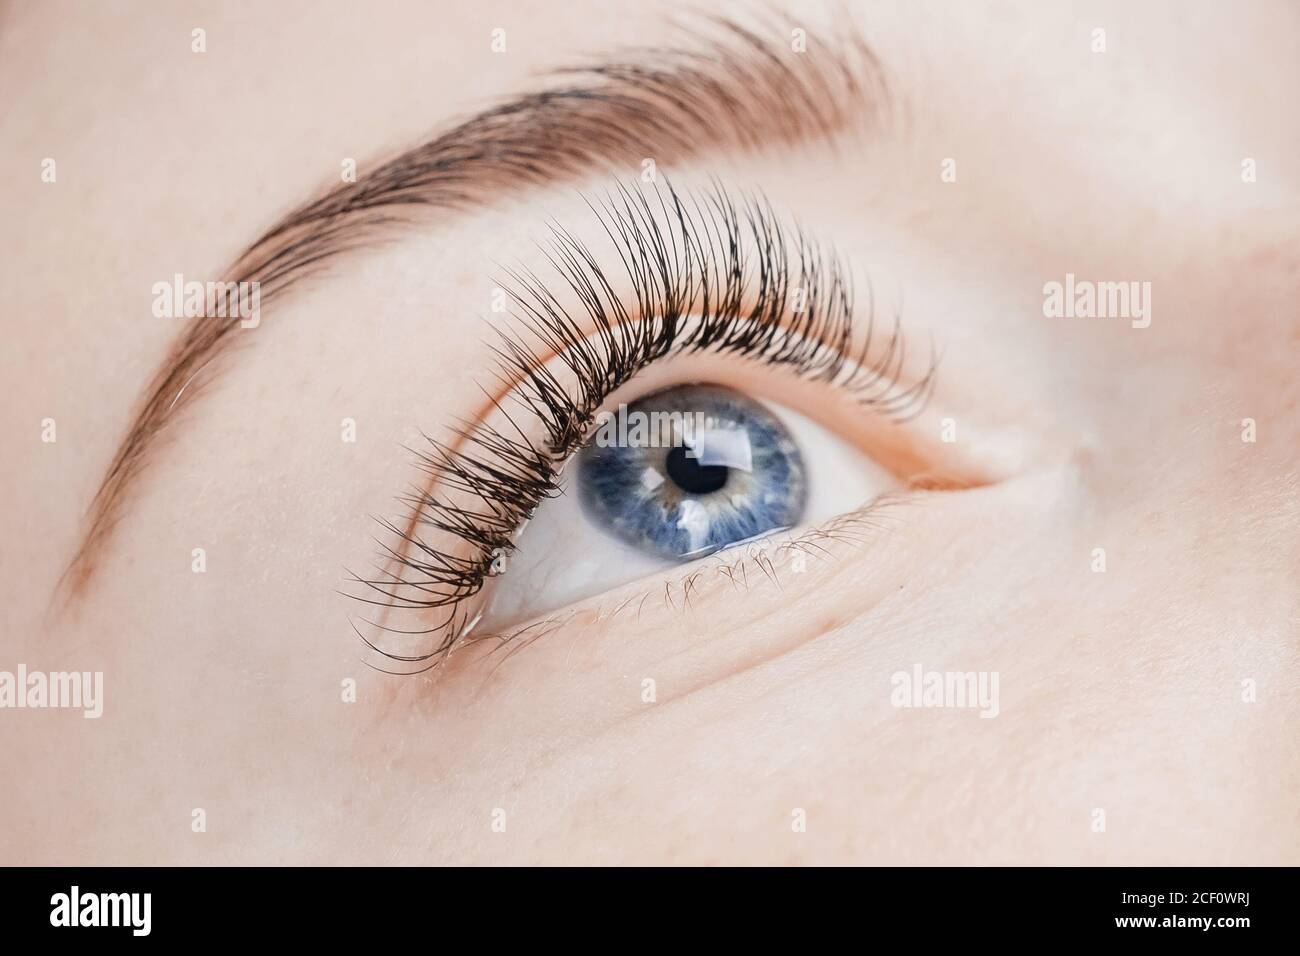 Wimpernverlängerung Verfahren. Schöne weibliche Augen mit langen Wimpern,  Nahaufnahme Stockfotografie - Alamy